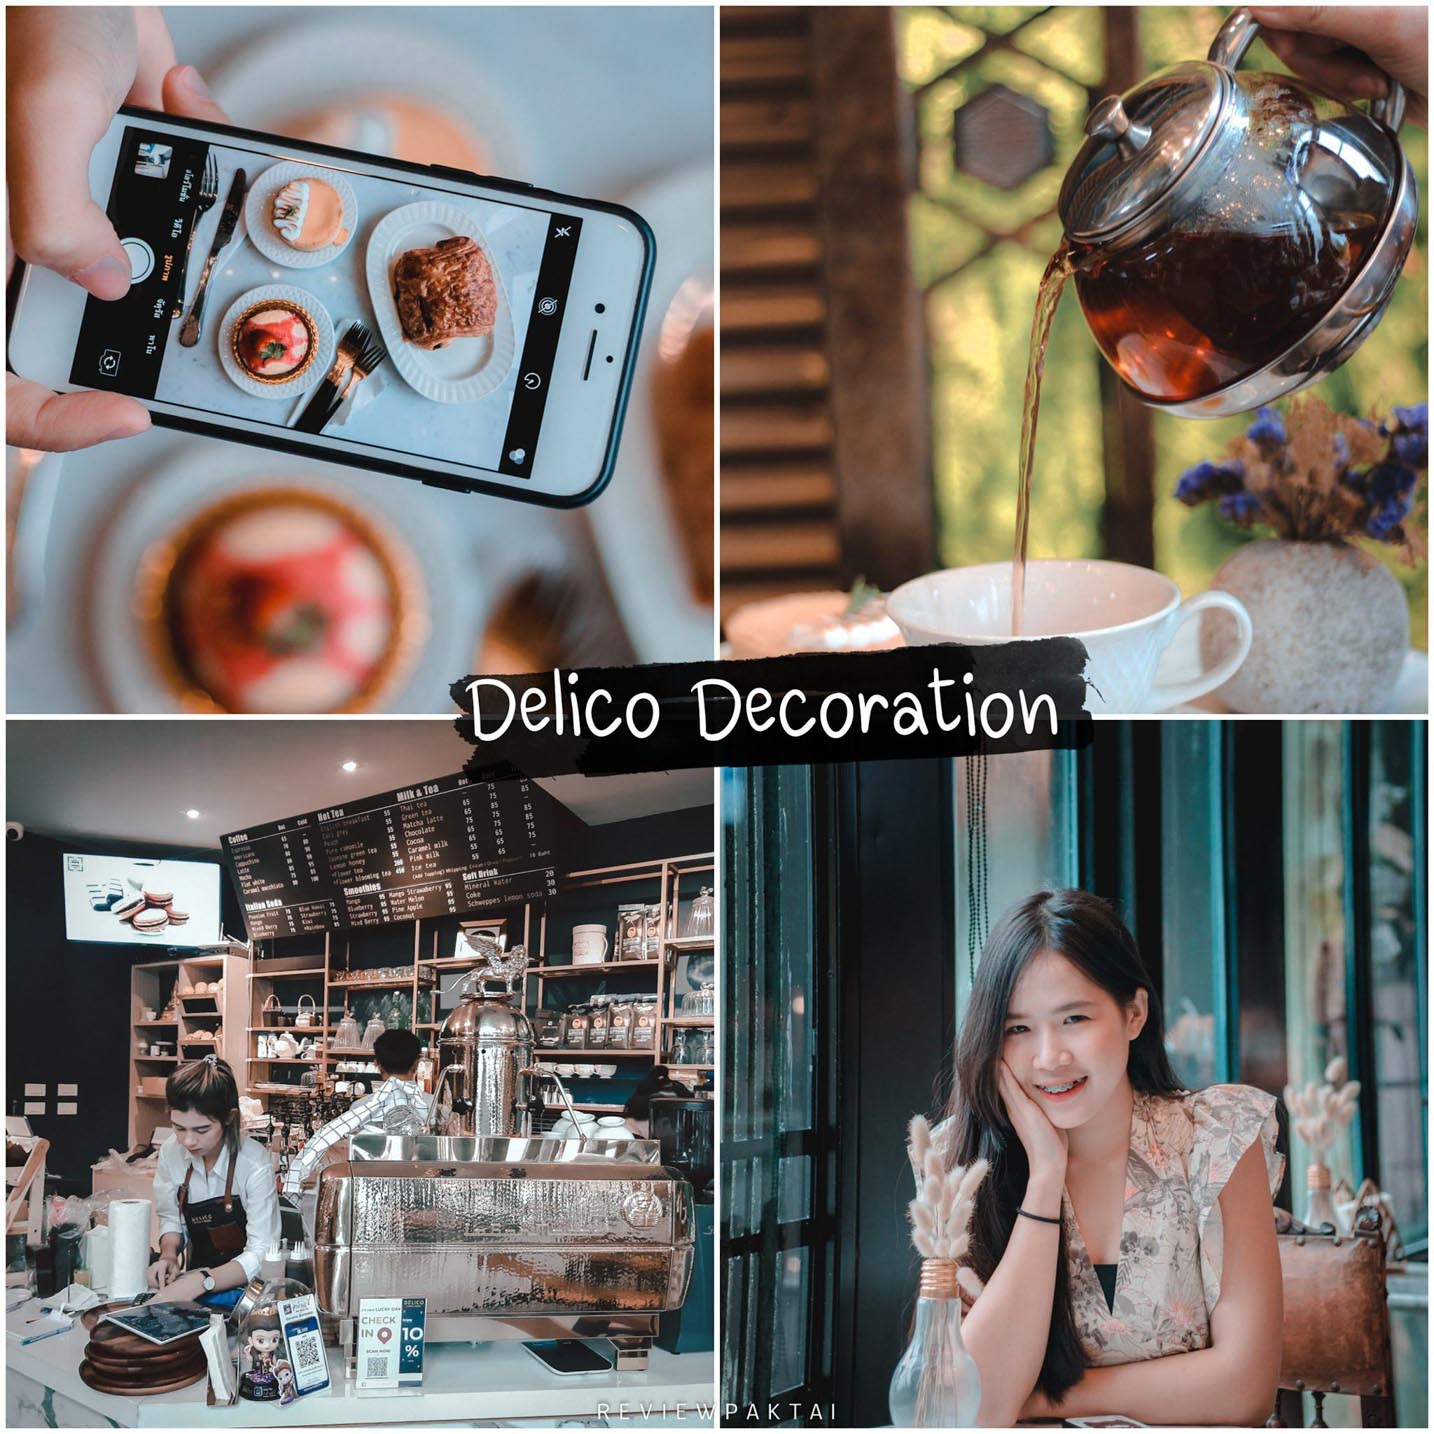 ร้าน Delico decoration coffee and dessert คาเฟ่-เบเกอรี่ ตกแต่งสไตล์ยุโรป มุมถ่ายรูปเยอะไปปักหมุดเช็คอินกัน